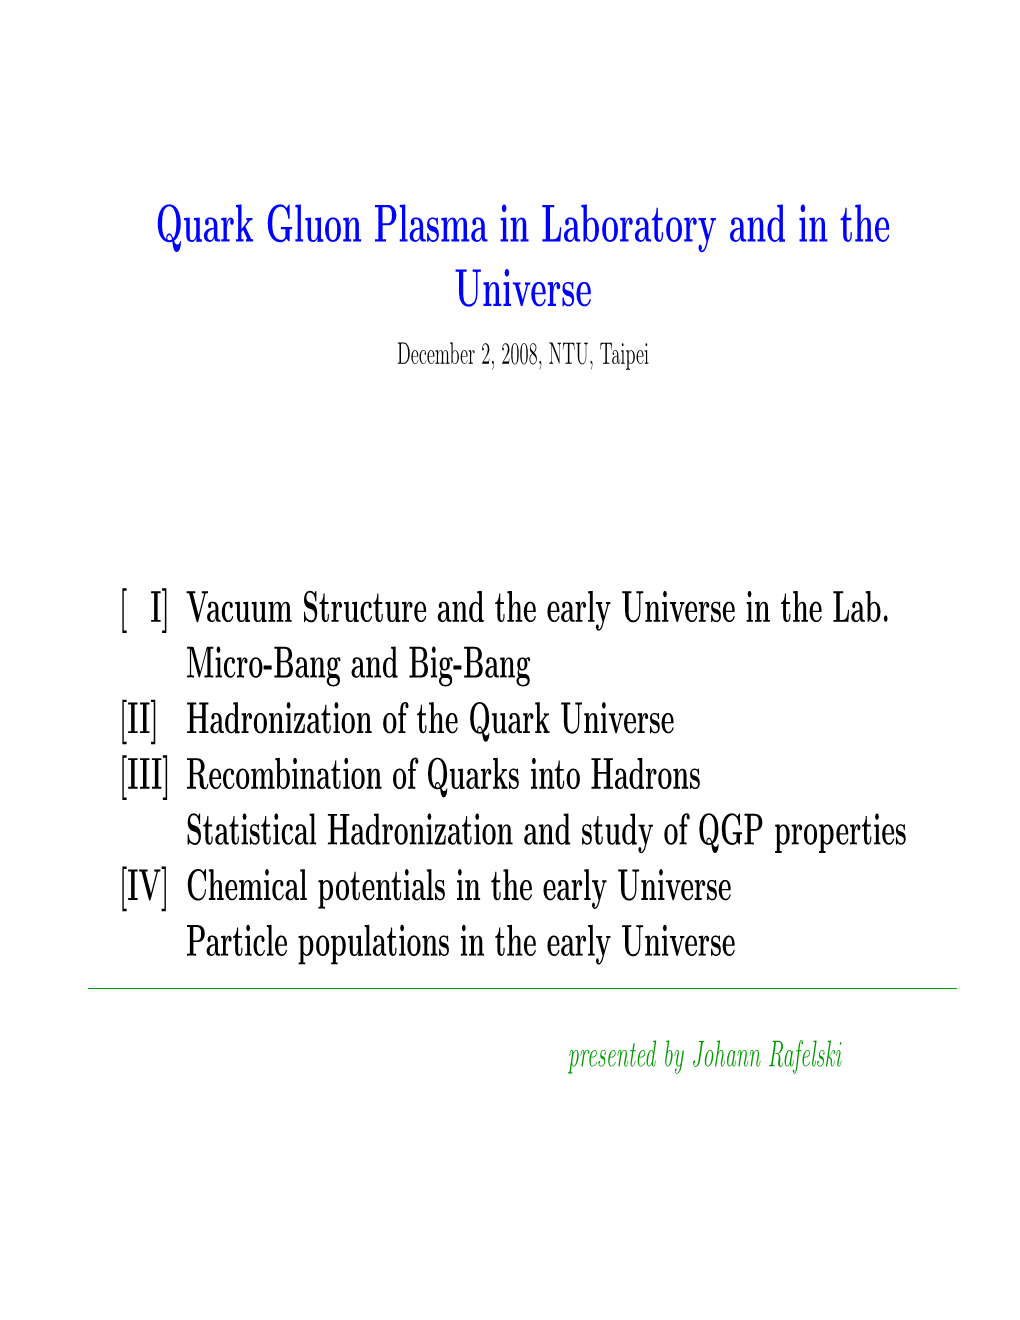 Physics Colloquium Quark Gluon Plasma in Laboratory and in The